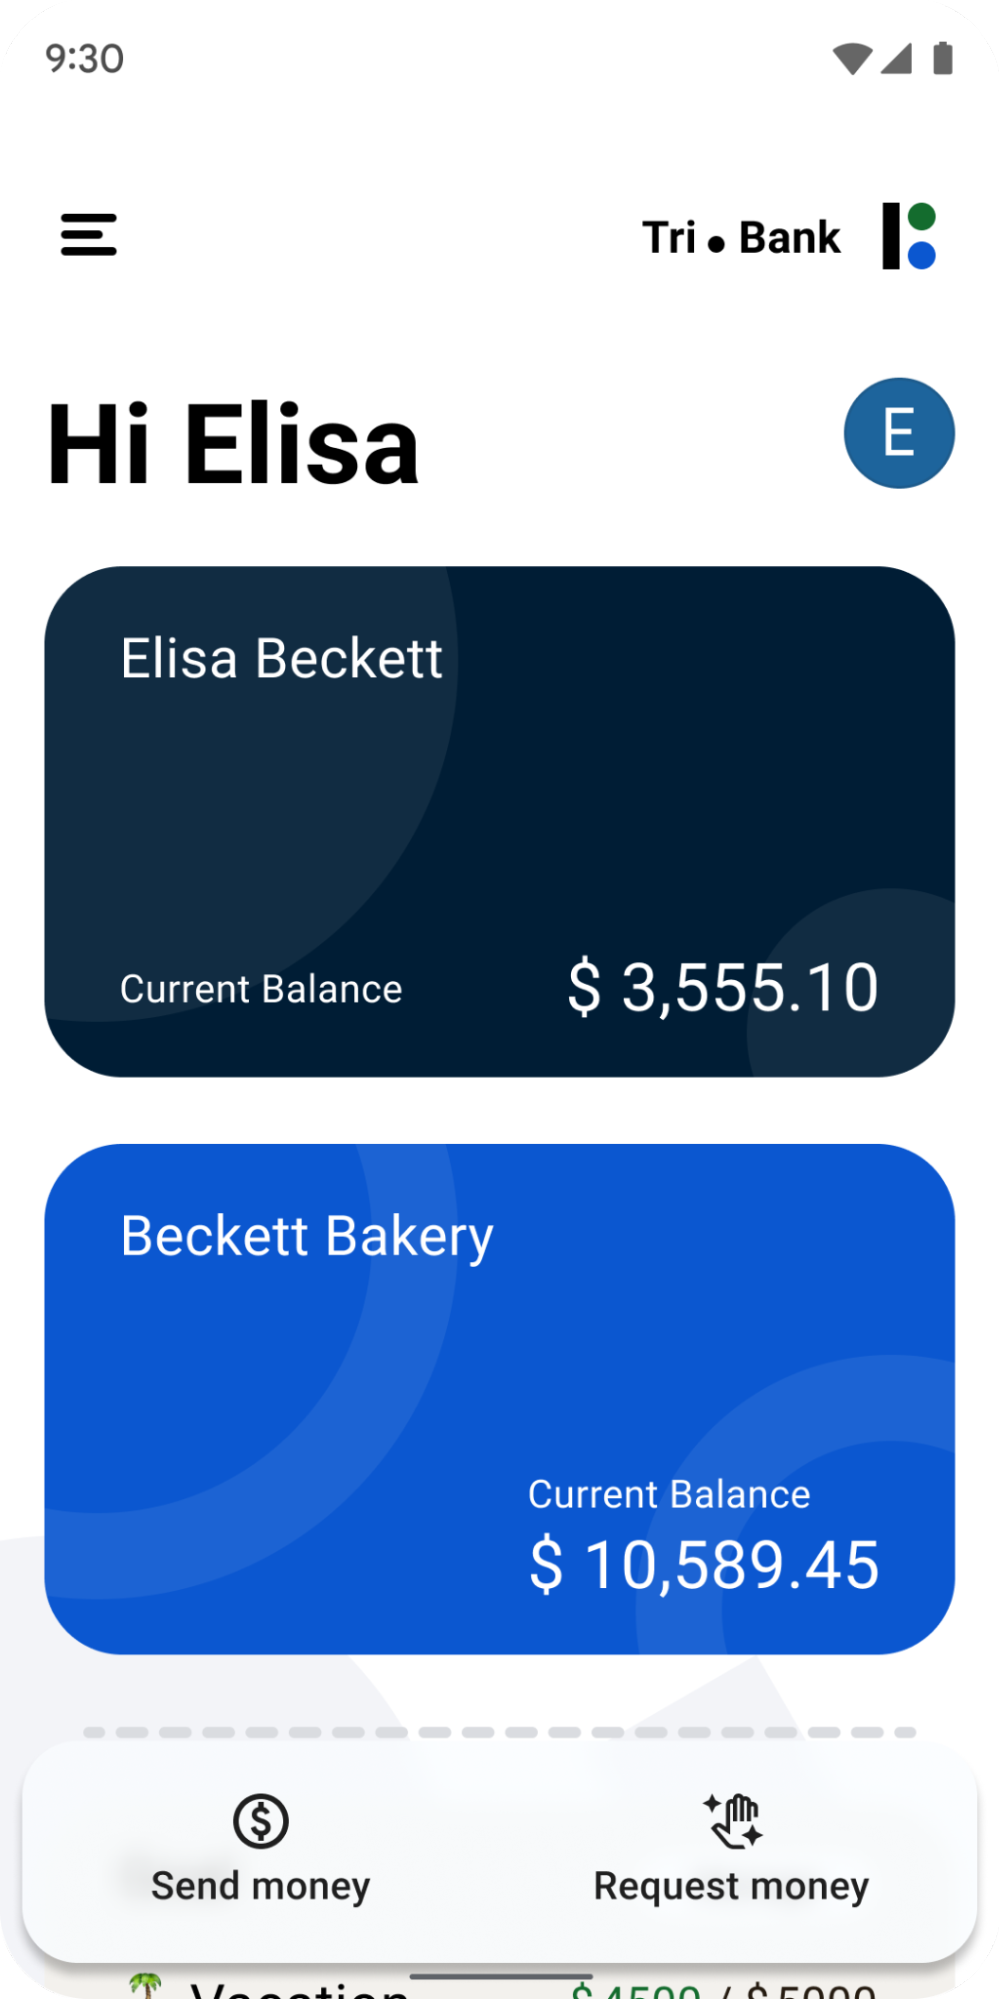 Zrzut ekranu aplikacji mobilnej banku